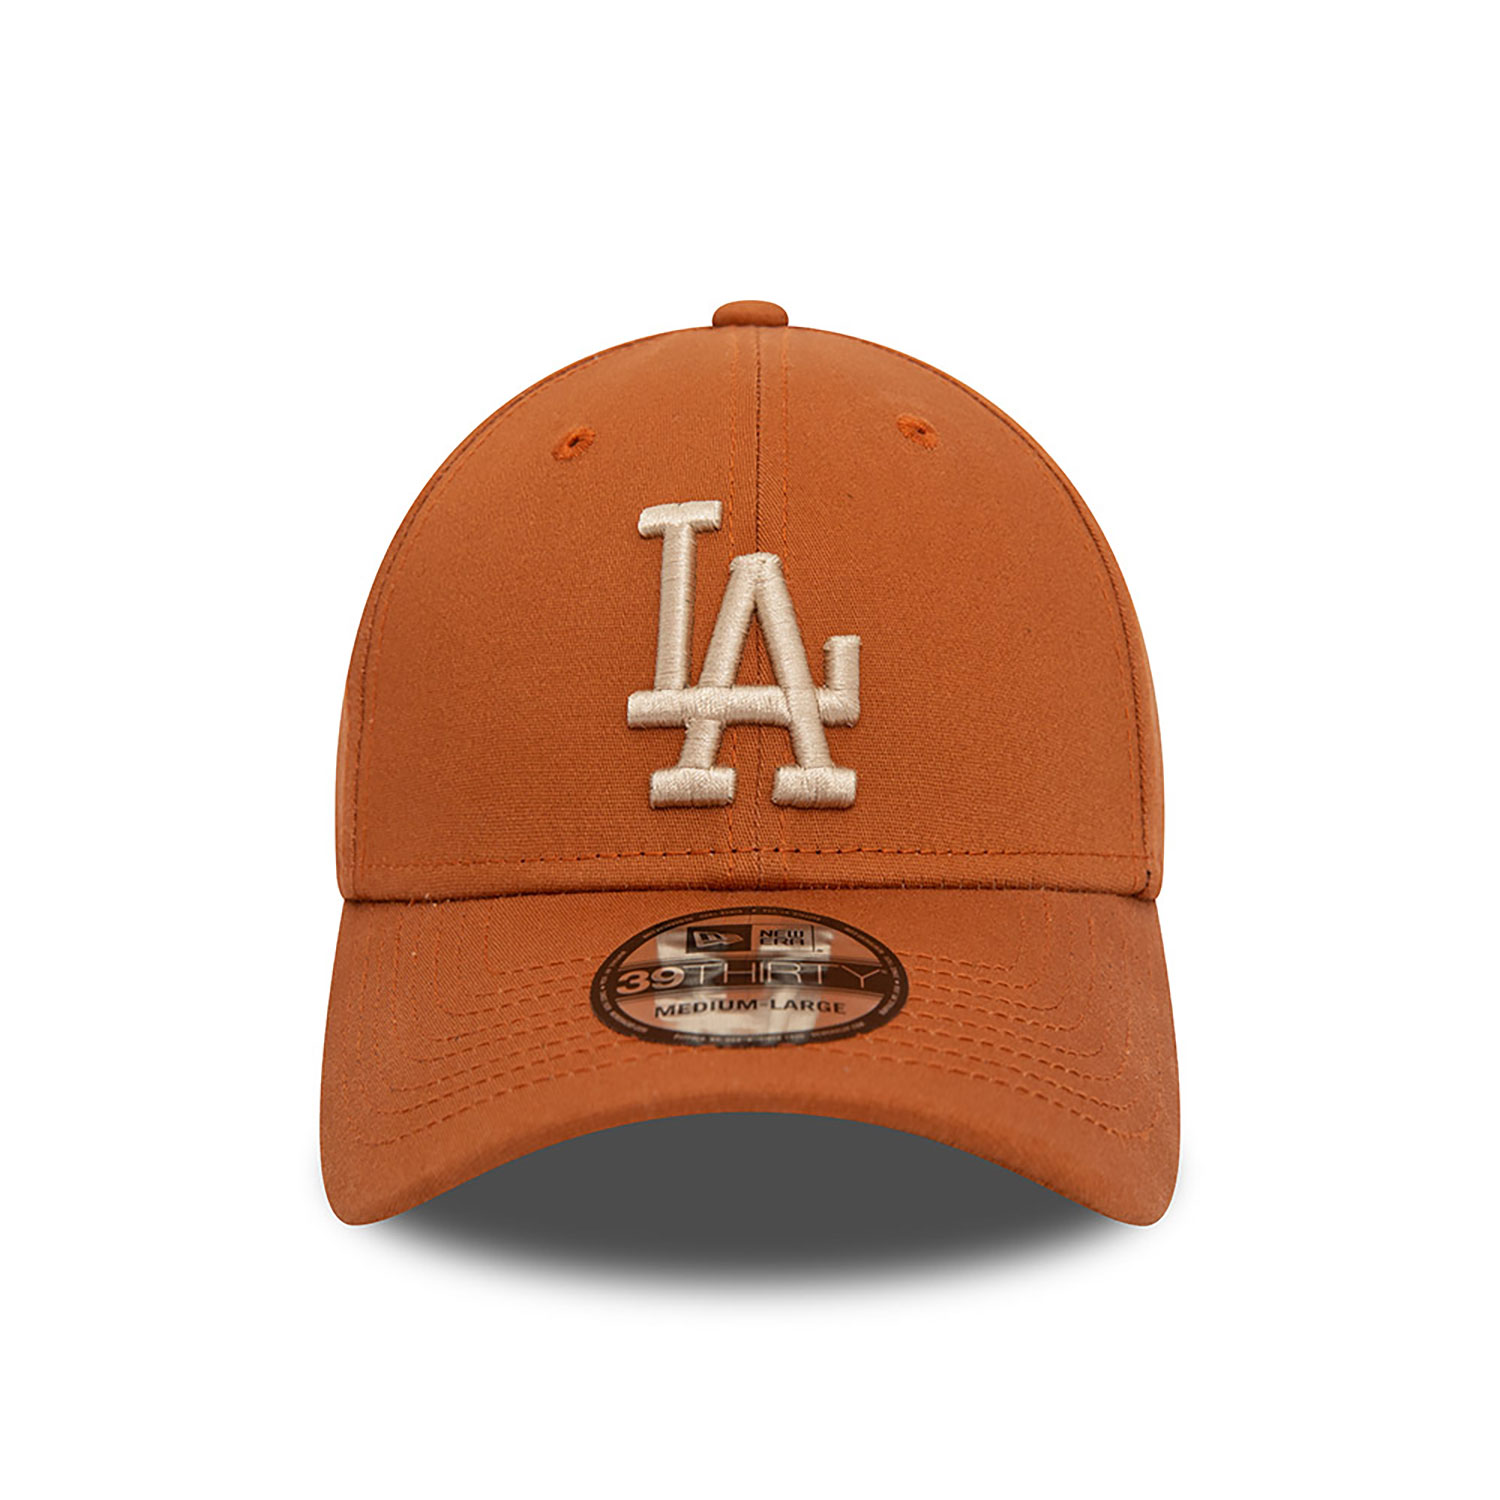 LA Dodgers League Essential Brown 39THIRTY Stretch Fit Cap